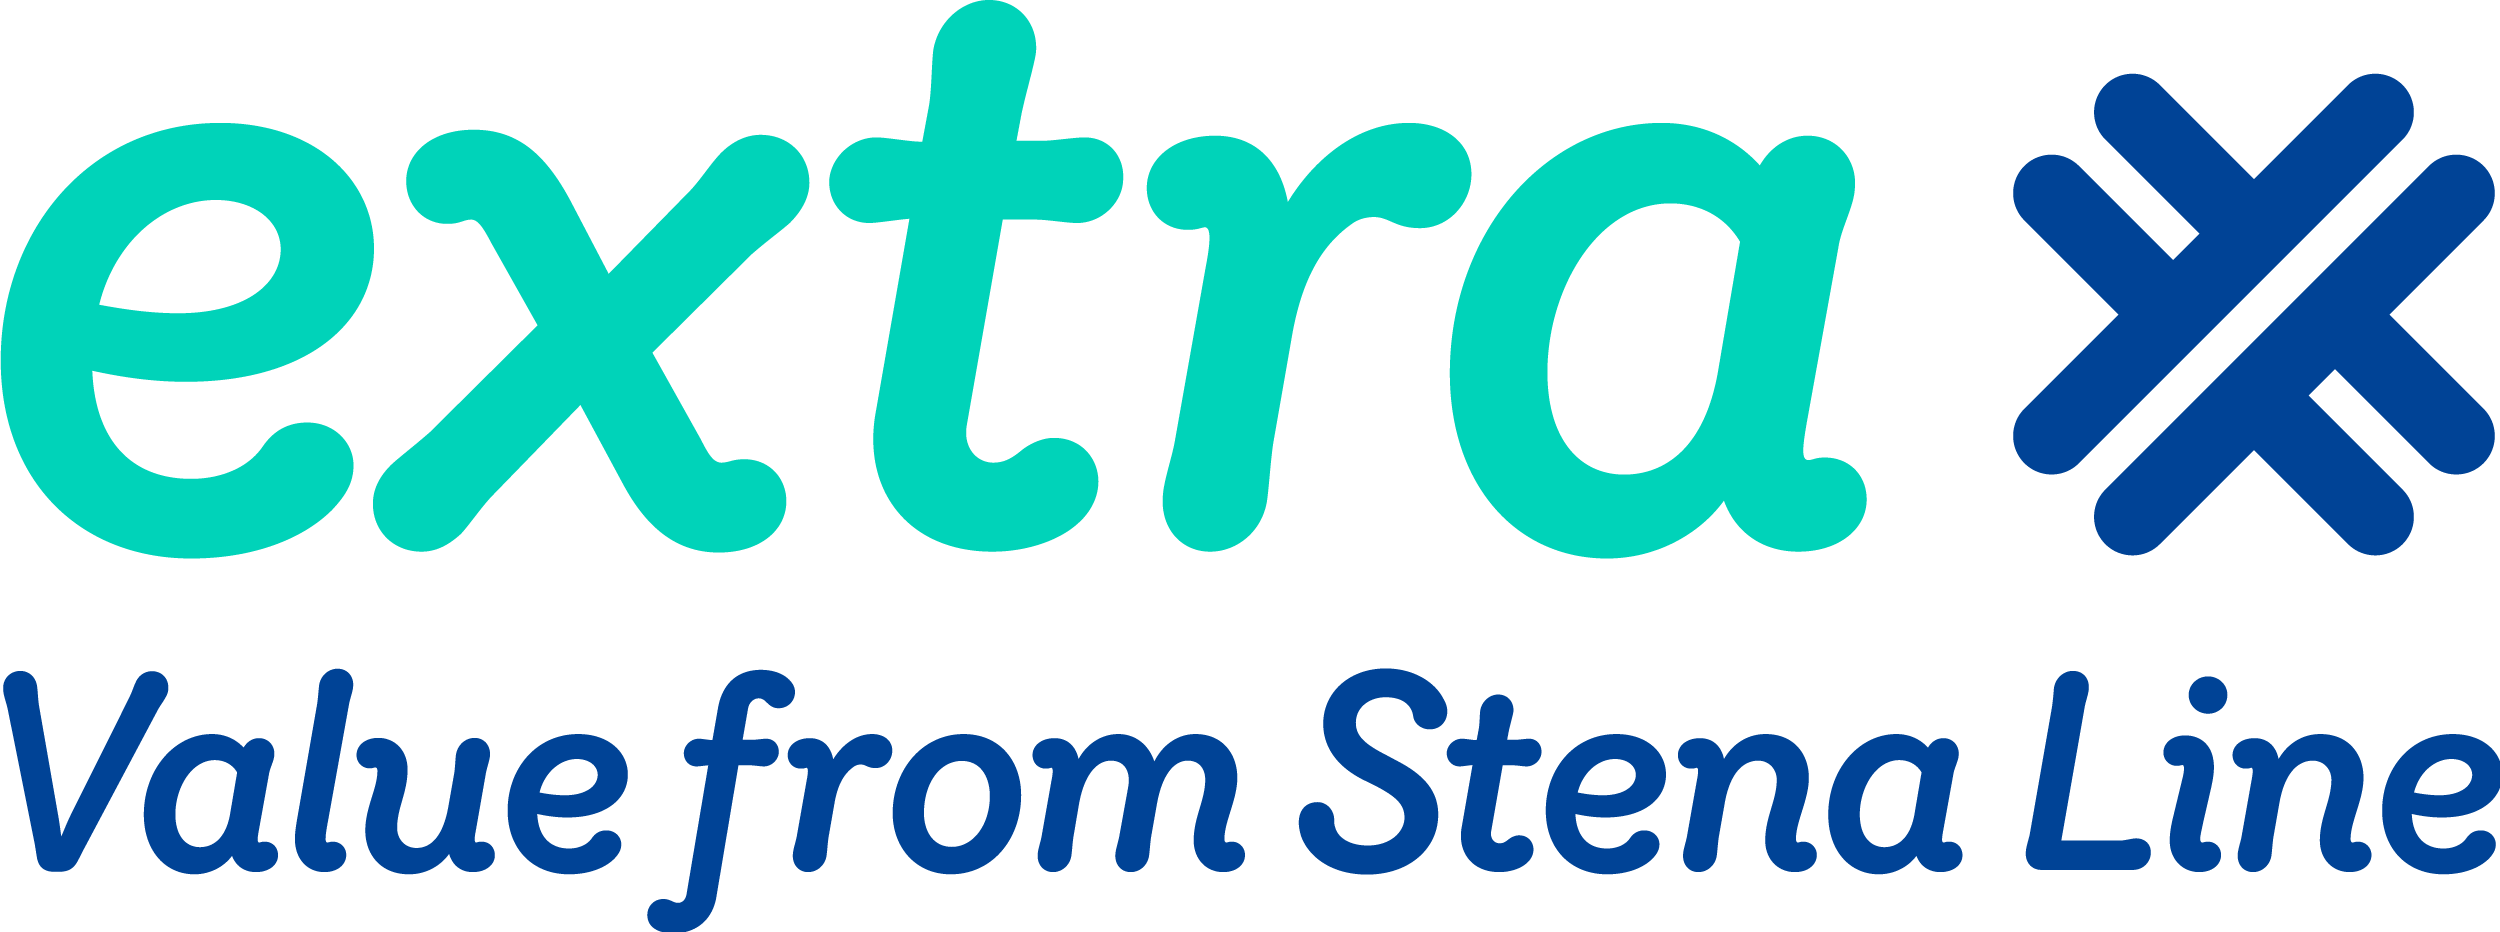 Logo členského klubu společnosti Stena Line s názvem „Extra“.